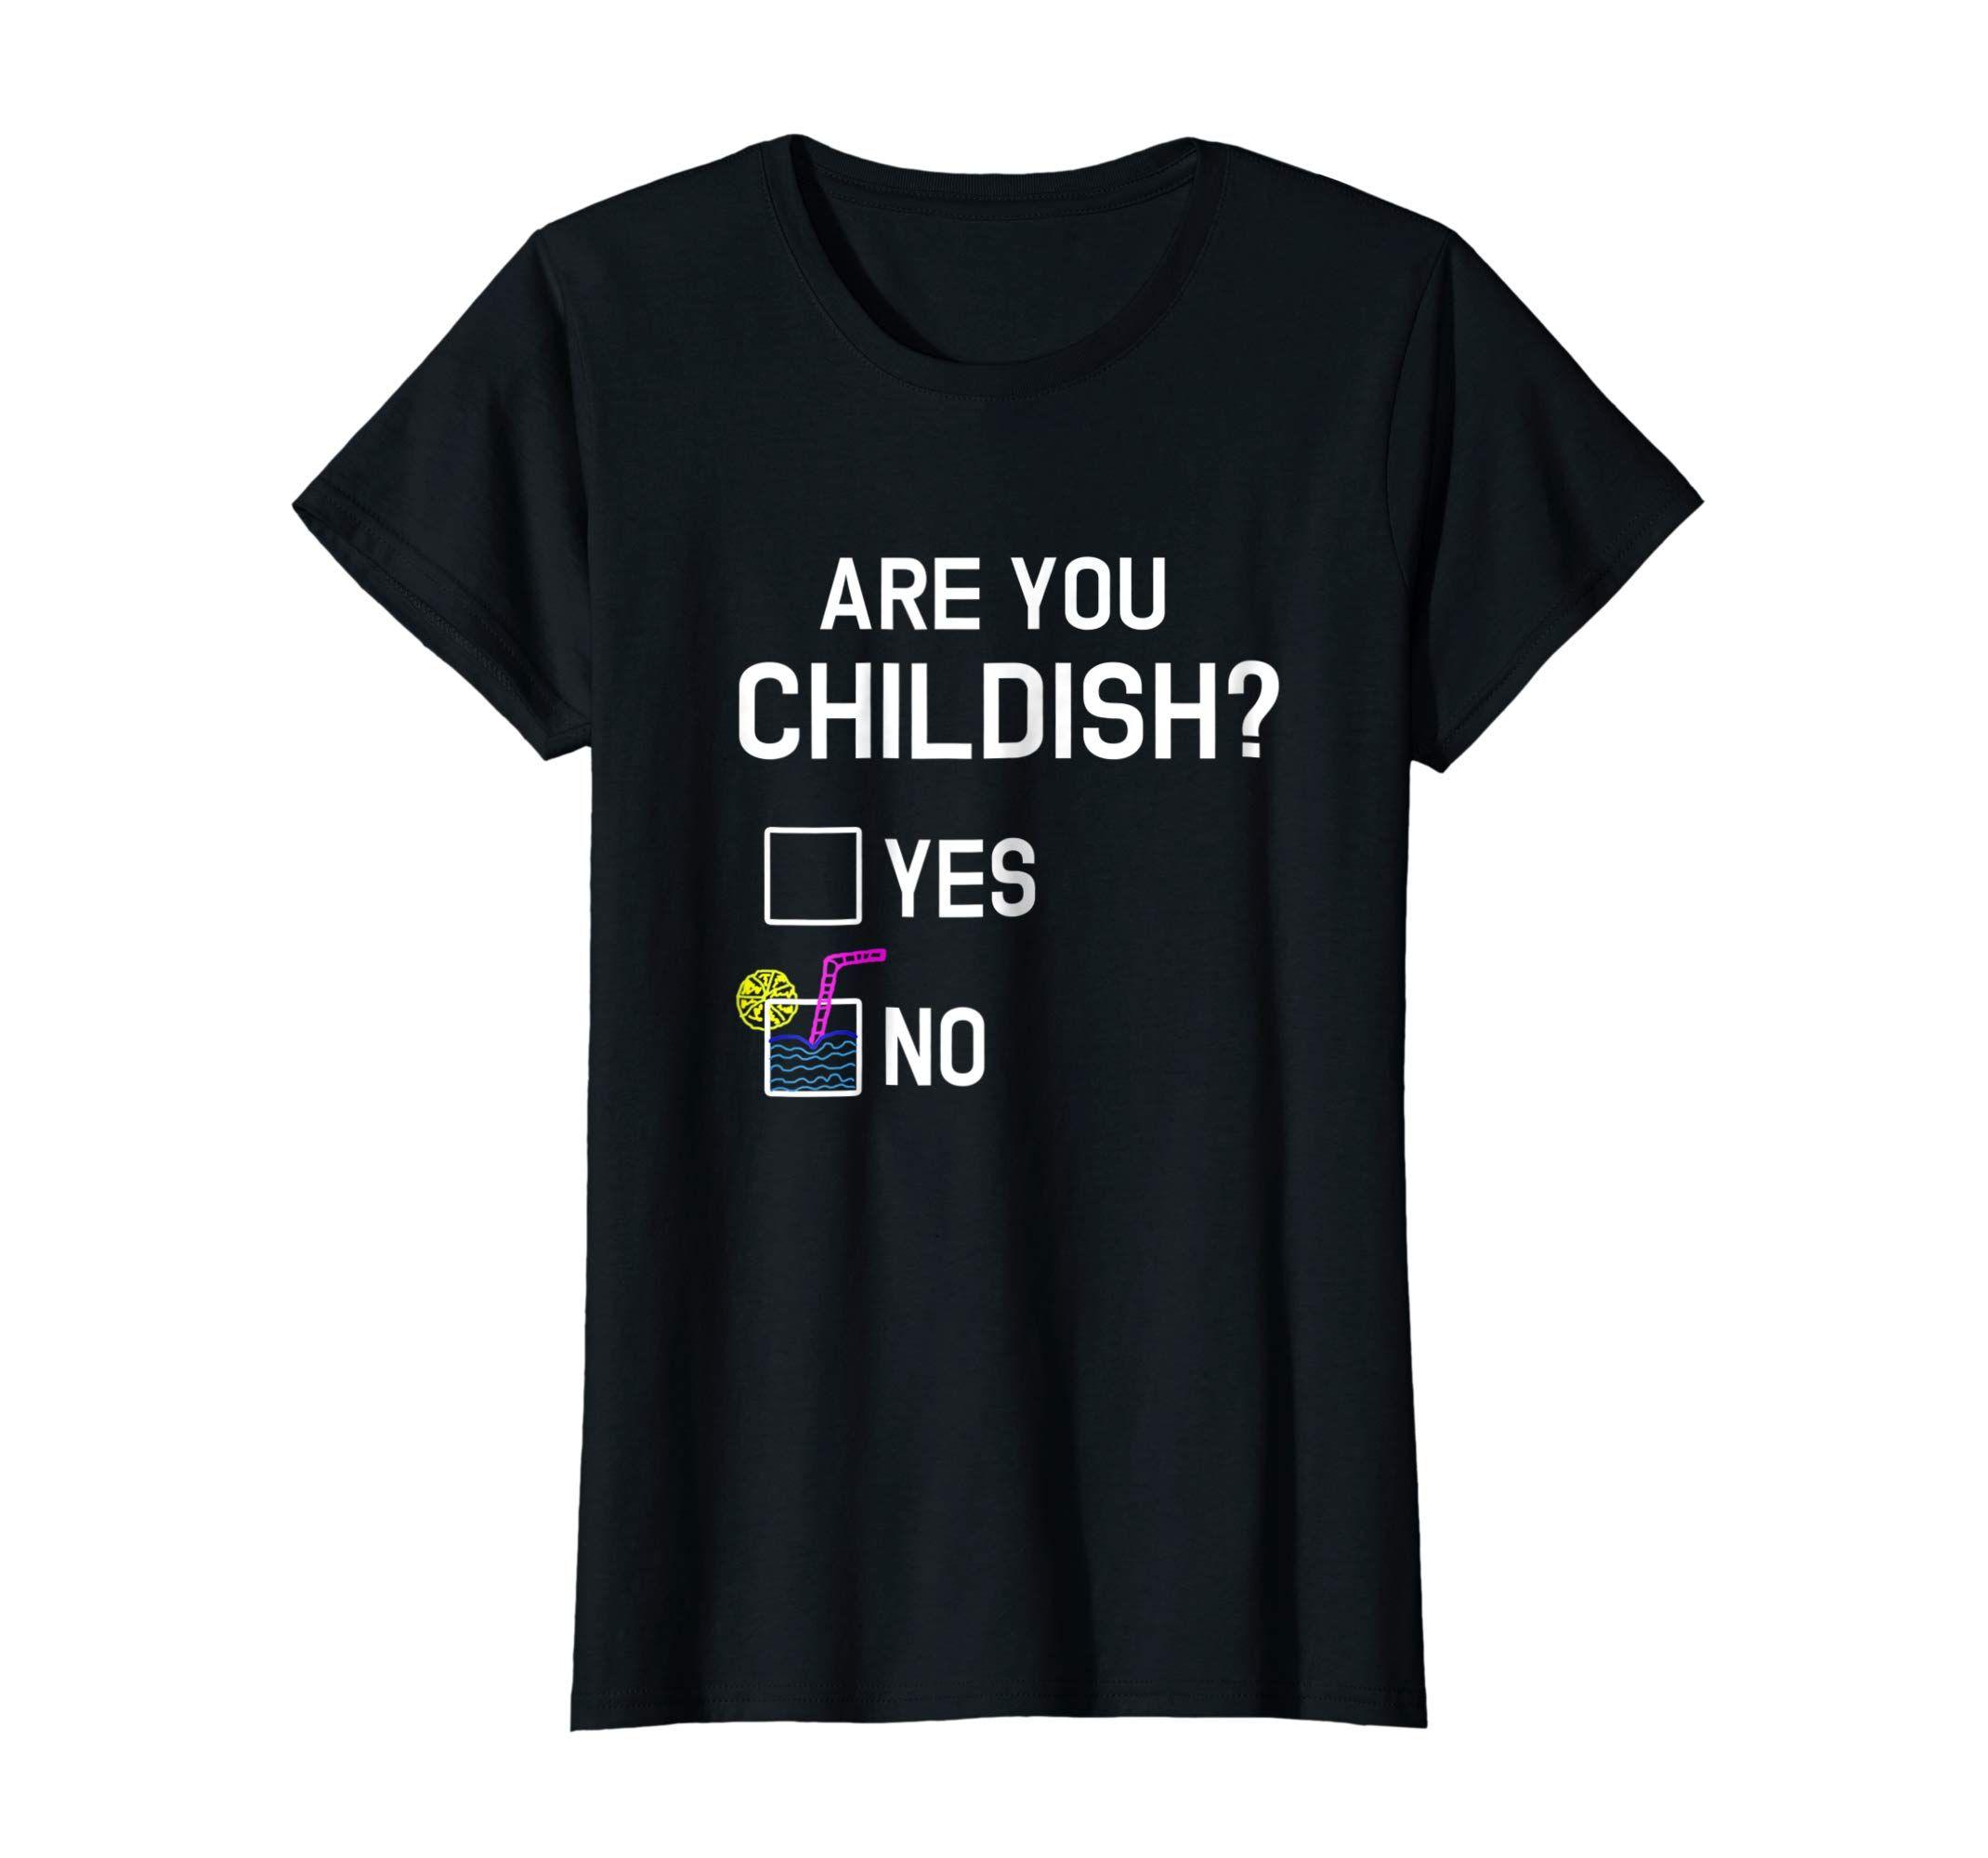 Google Funny Childish Logo - Amazon.com: Are You Childish T-Shirt - Funny Yes No Immaturity Joke ...